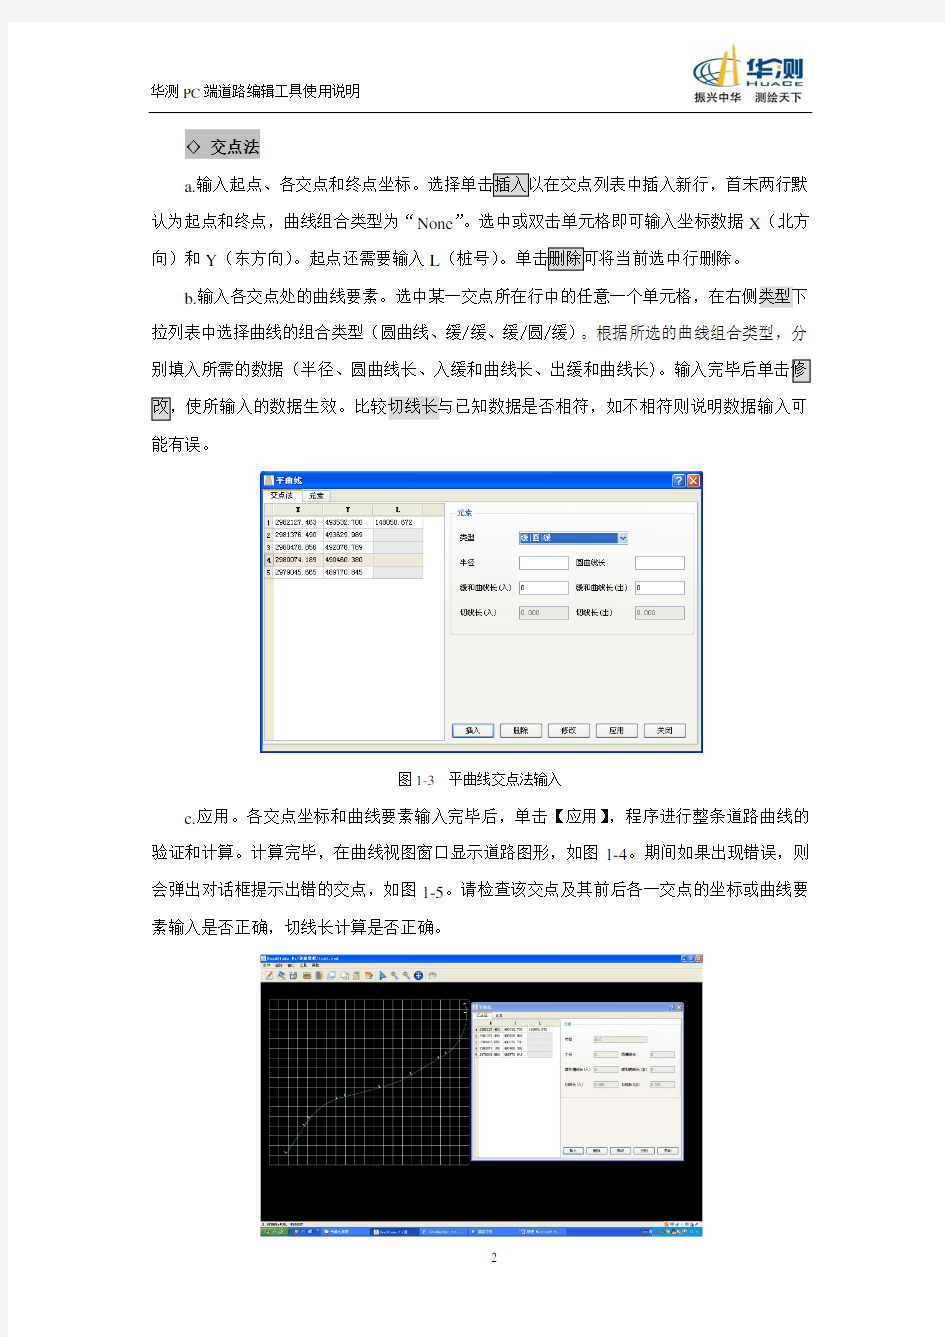 华测PC端道路编辑工具使用说明201208.pdf